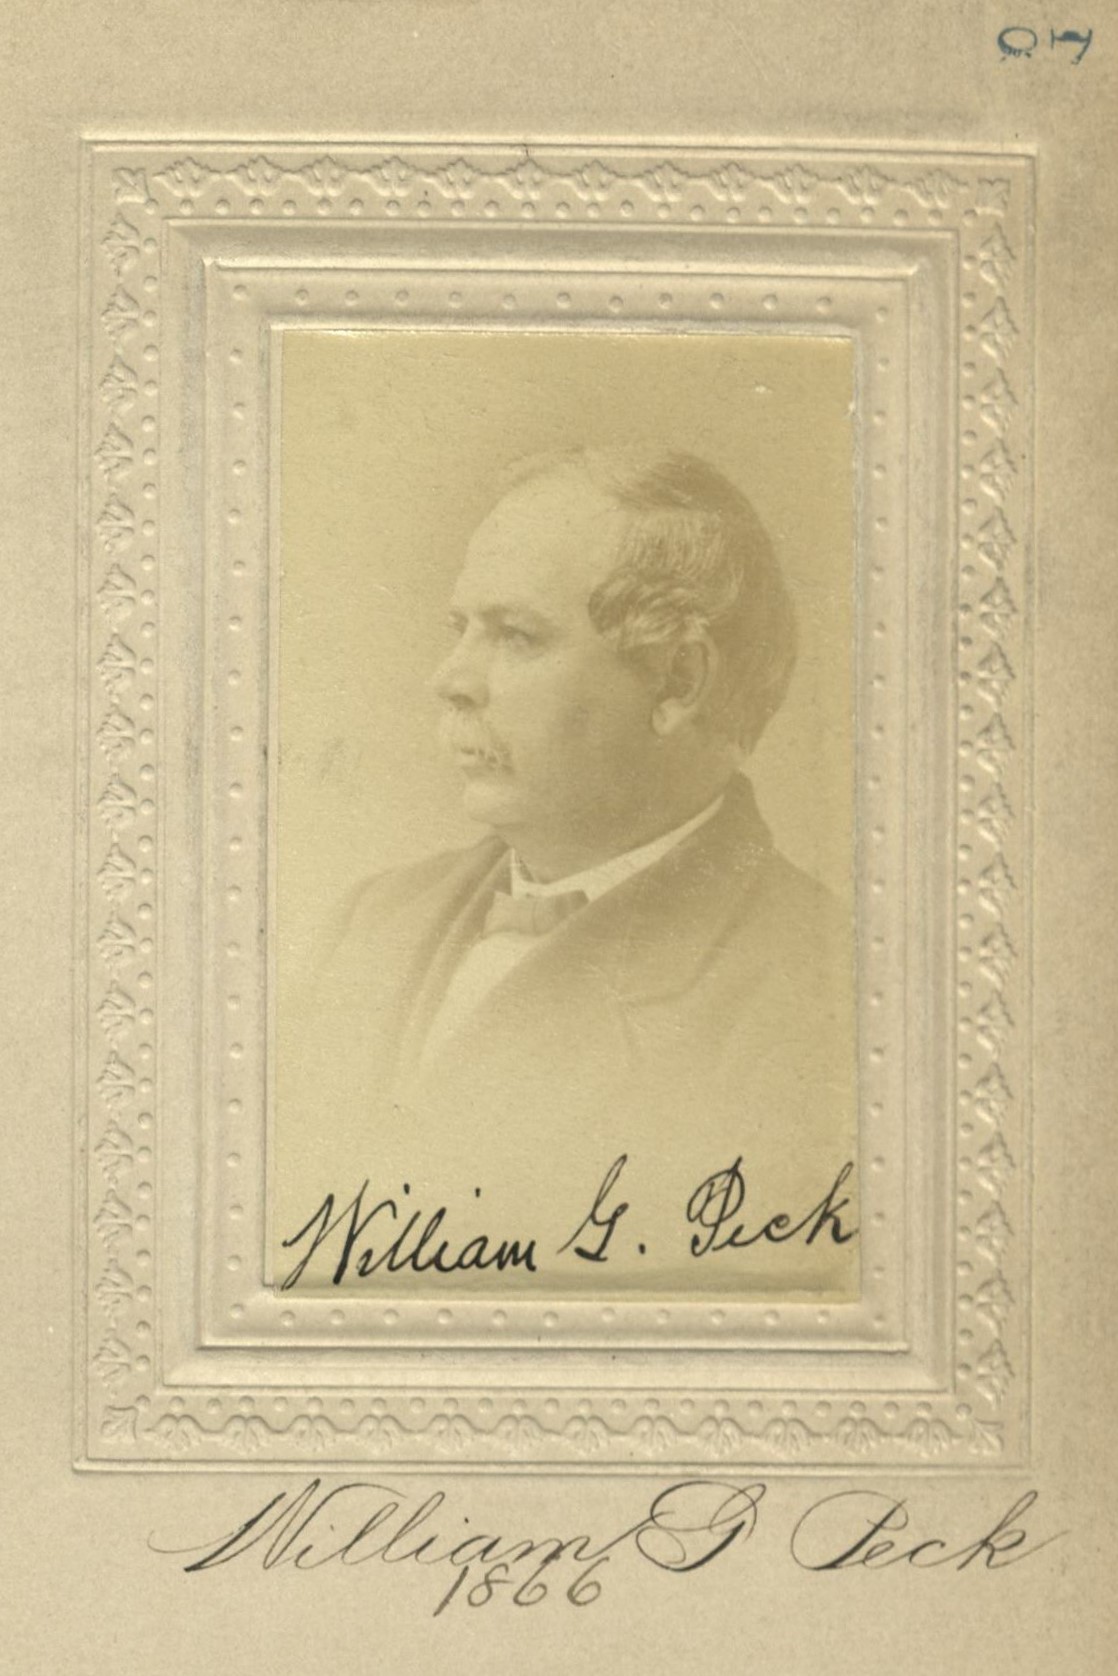 Member portrait of William G. Peck